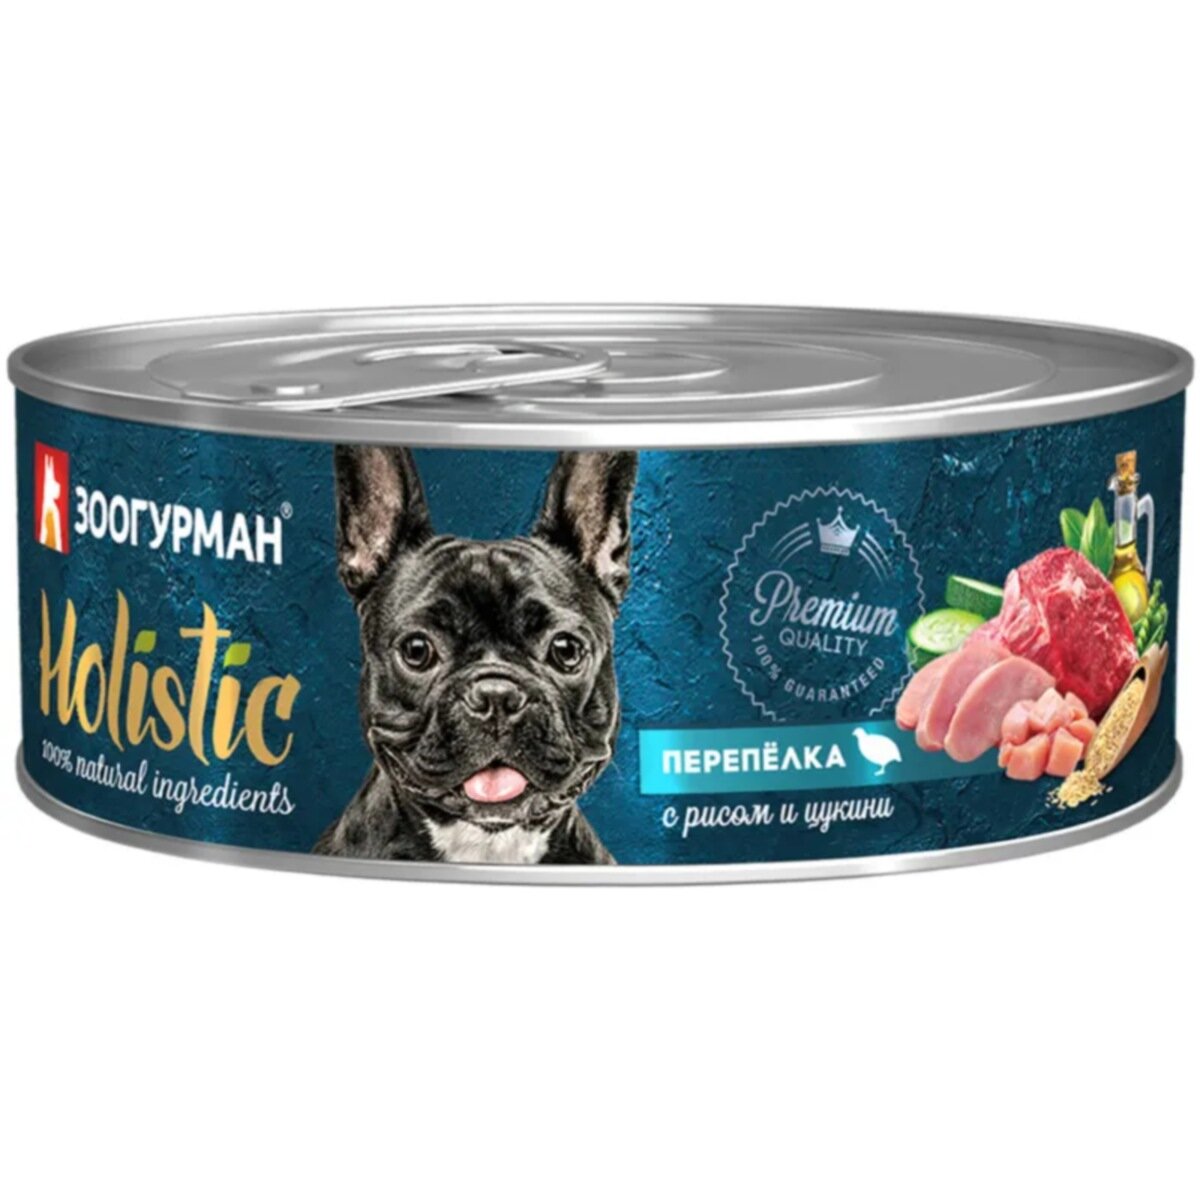 Зоогурман Holistic консервы для собак Перепёлка с рисом и цукини 100г